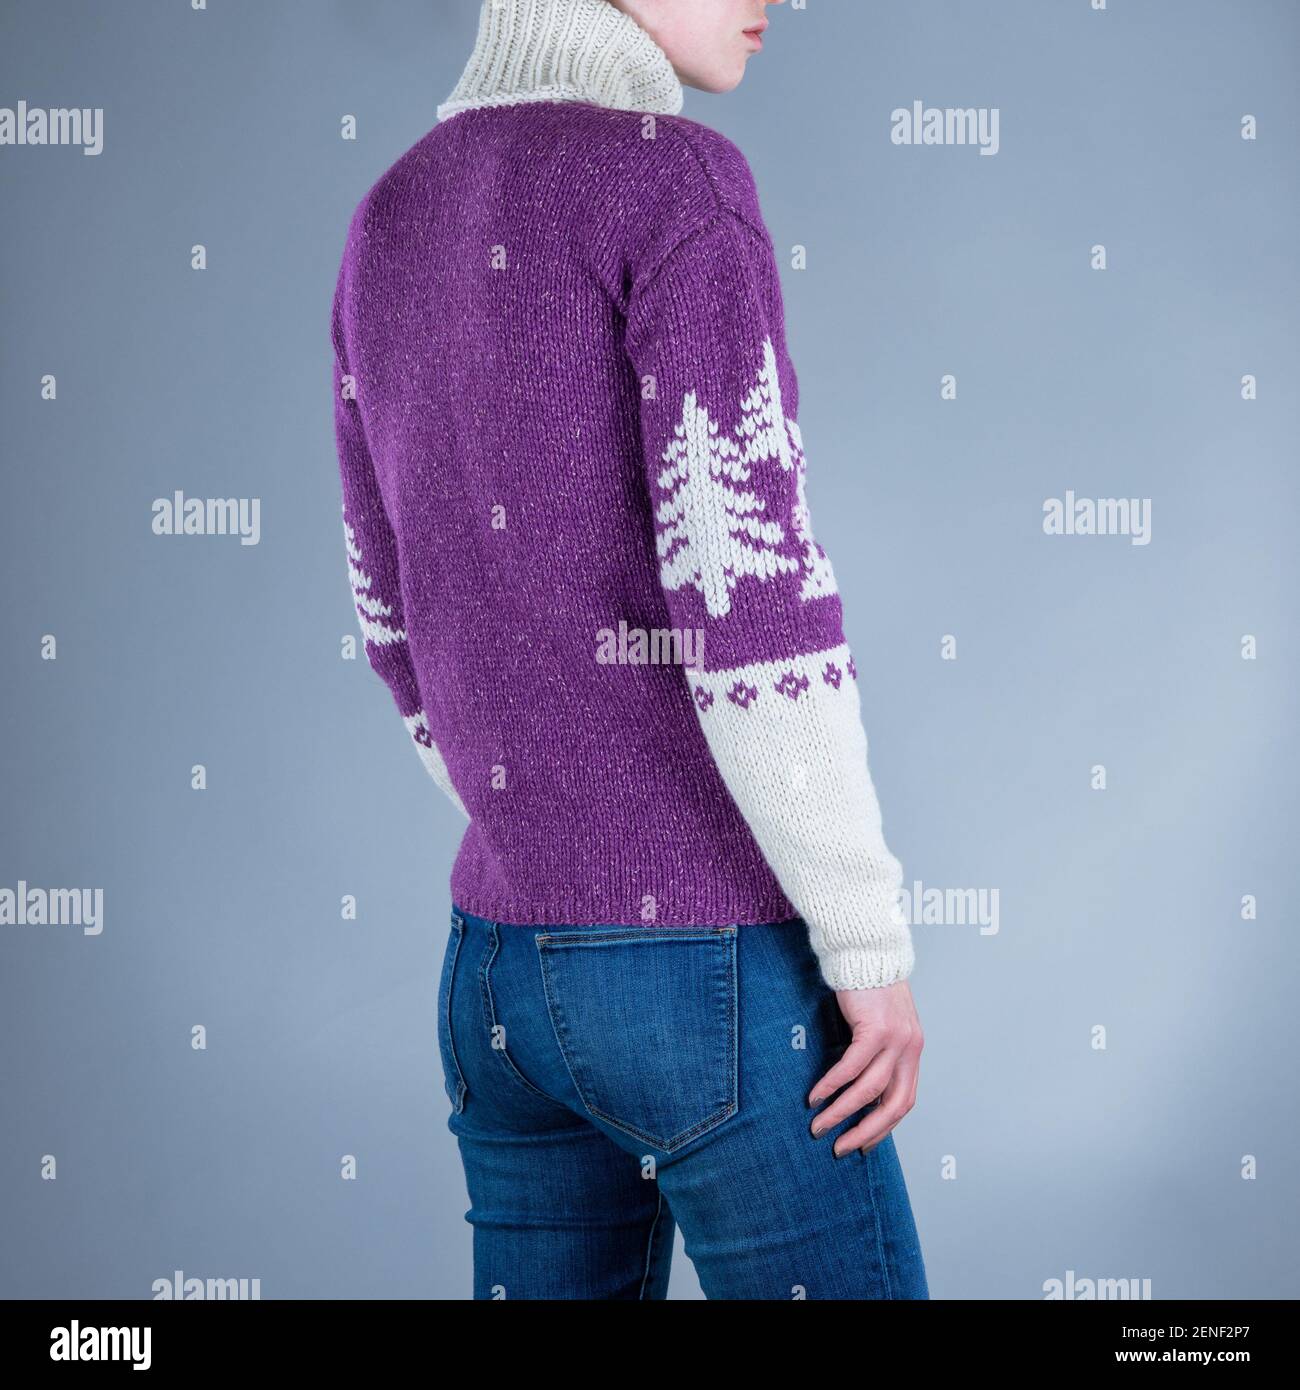 Nahaufnahme von Yang Frau in lila Pullover und blaue Jeans. Weihnachtlicher  Pullover. Grauer Hintergrund Stockfotografie - Alamy